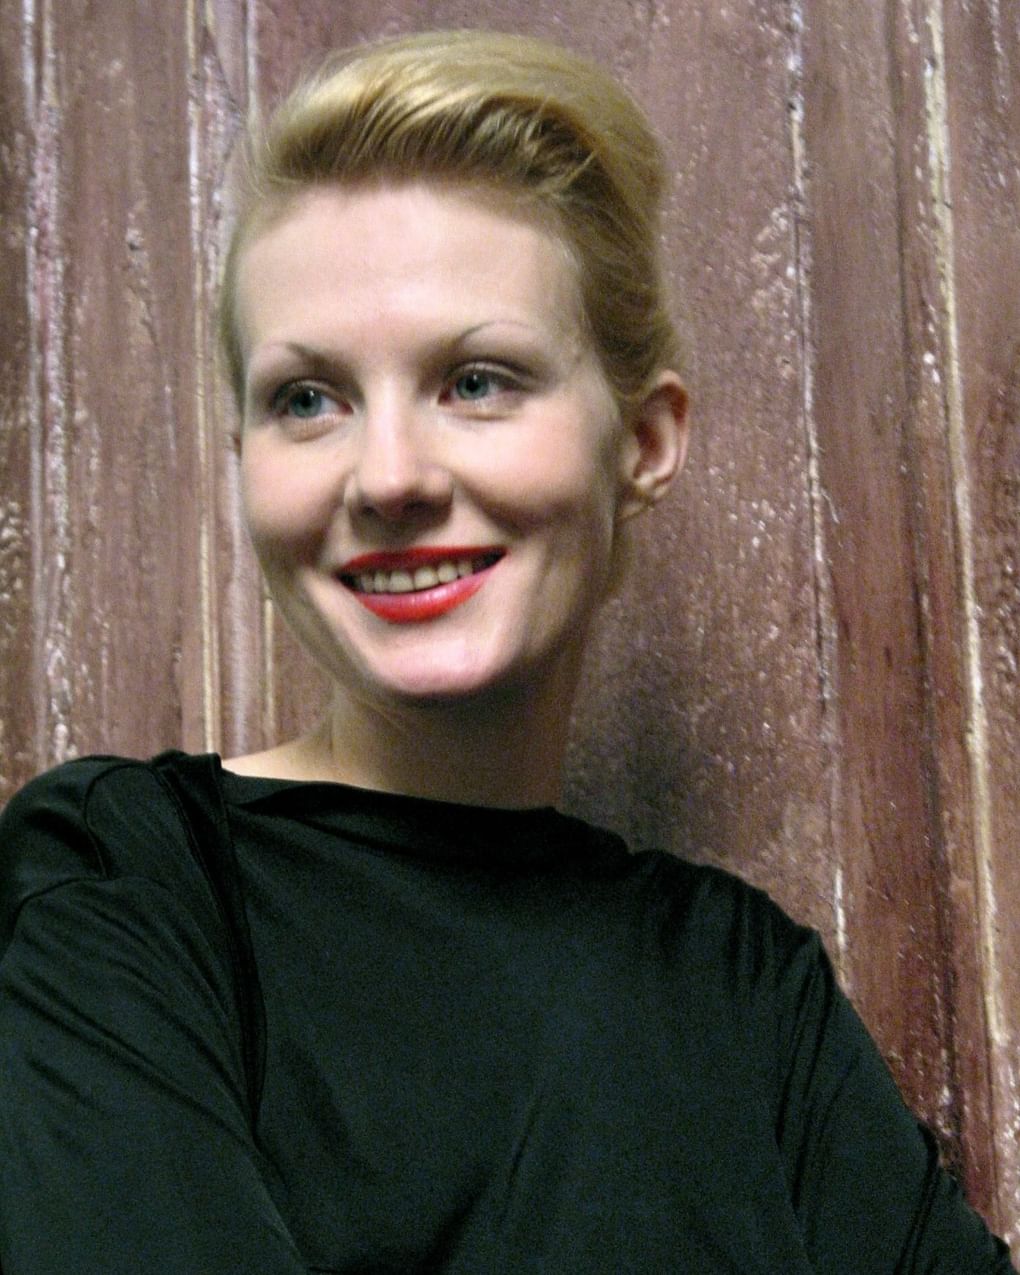 Рената Литвинова на съемках видеоклипа. Москва, 2003 год. Фотография: Андрей Кузин / ИТАР-ТАСС